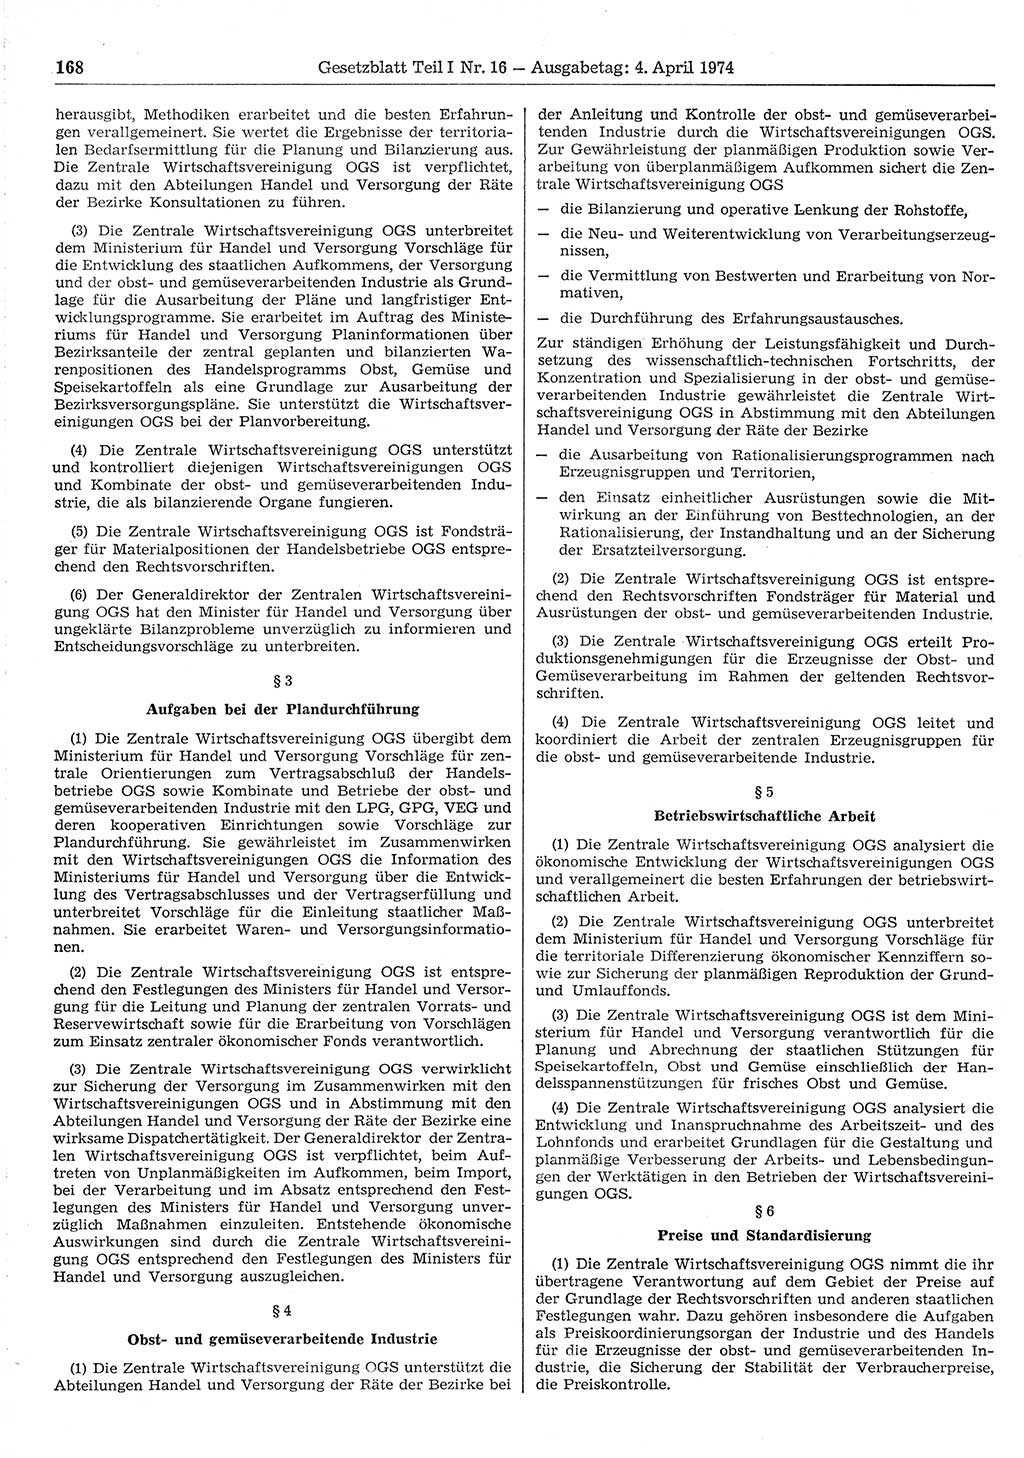 Gesetzblatt (GBl.) der Deutschen Demokratischen Republik (DDR) Teil Ⅰ 1974, Seite 168 (GBl. DDR Ⅰ 1974, S. 168)